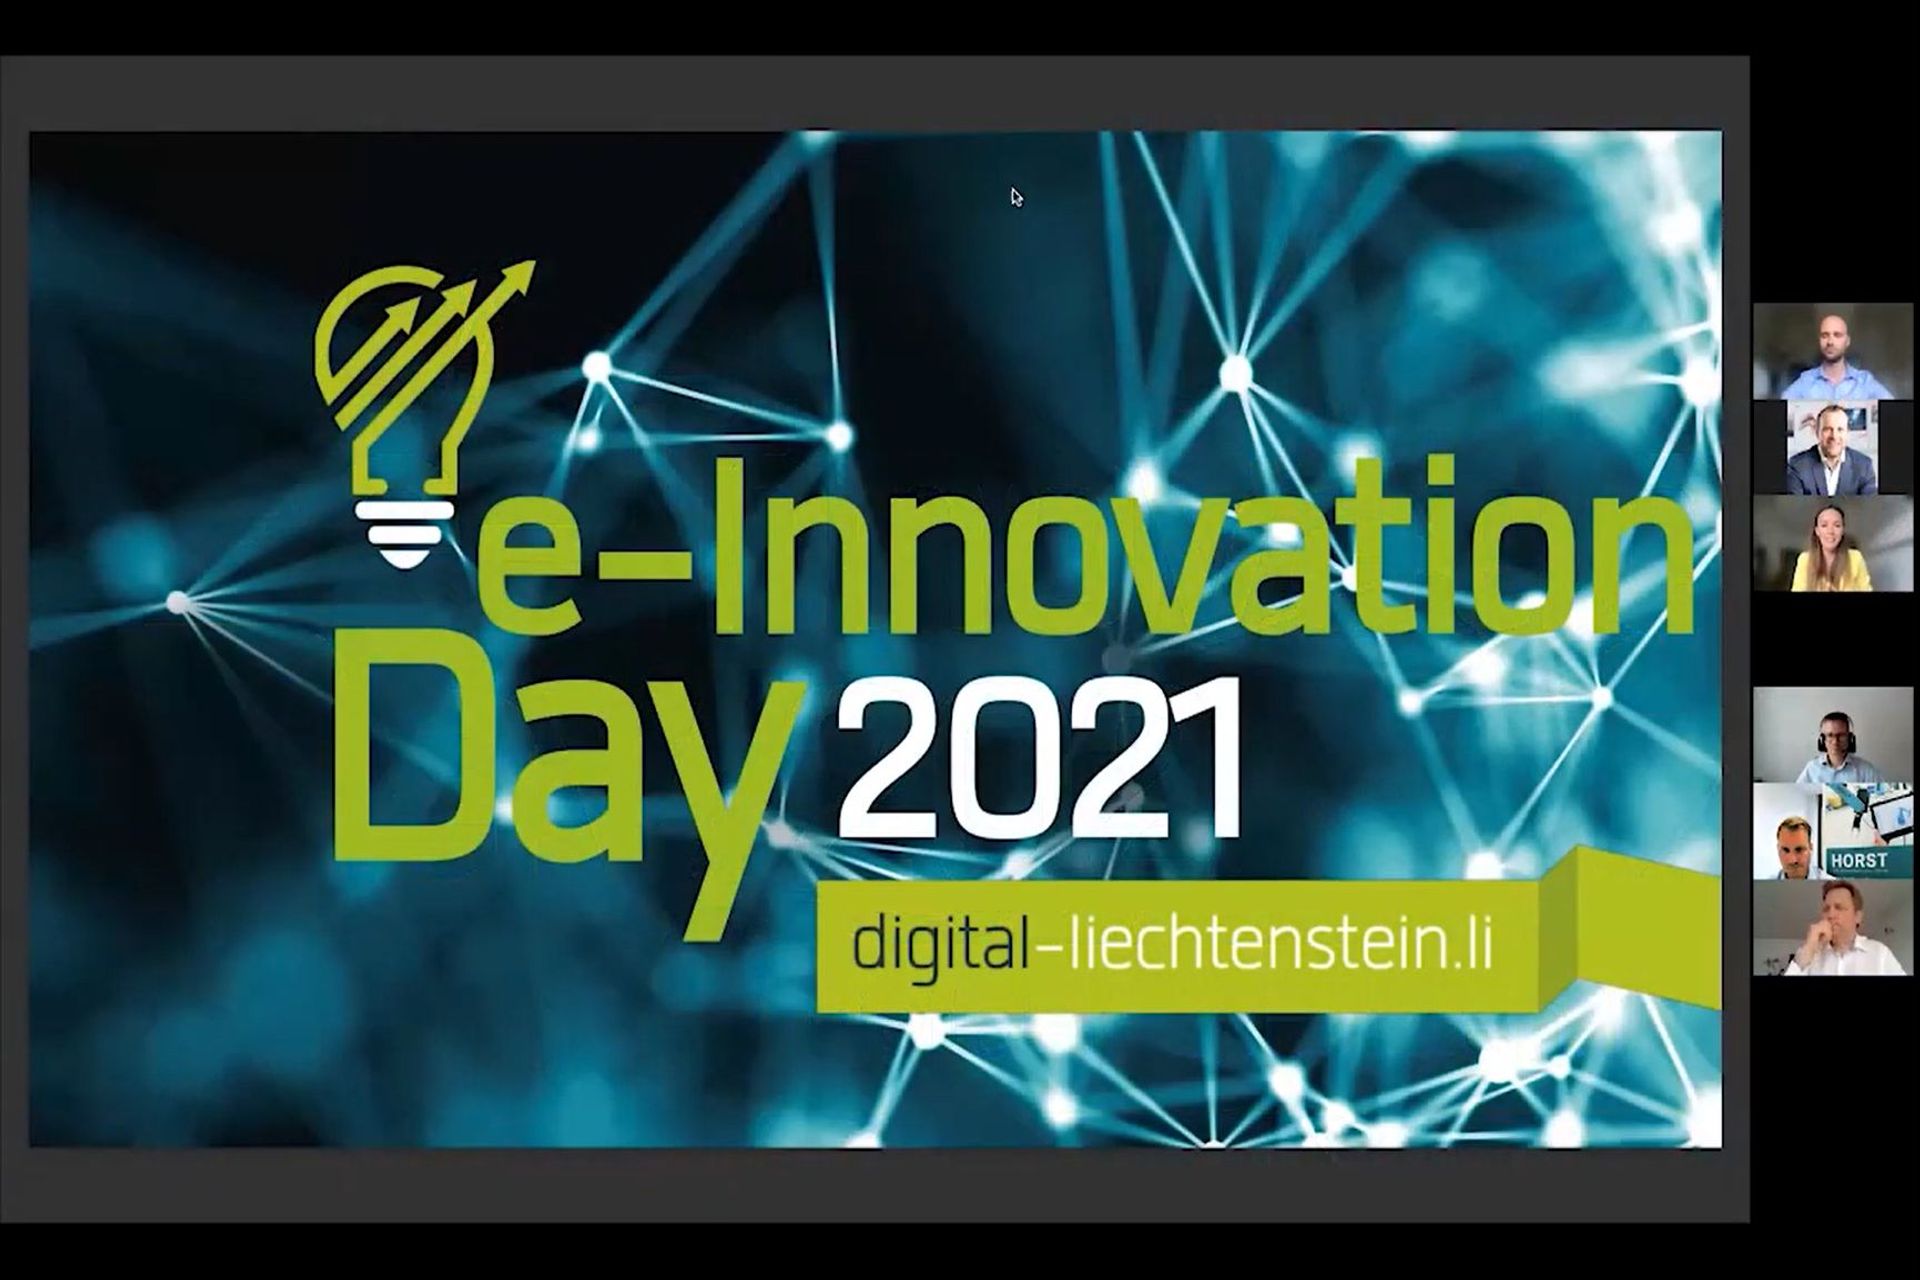 Een eerste frame uit het webinar 'e-Innovation' Liechtenstein 2021